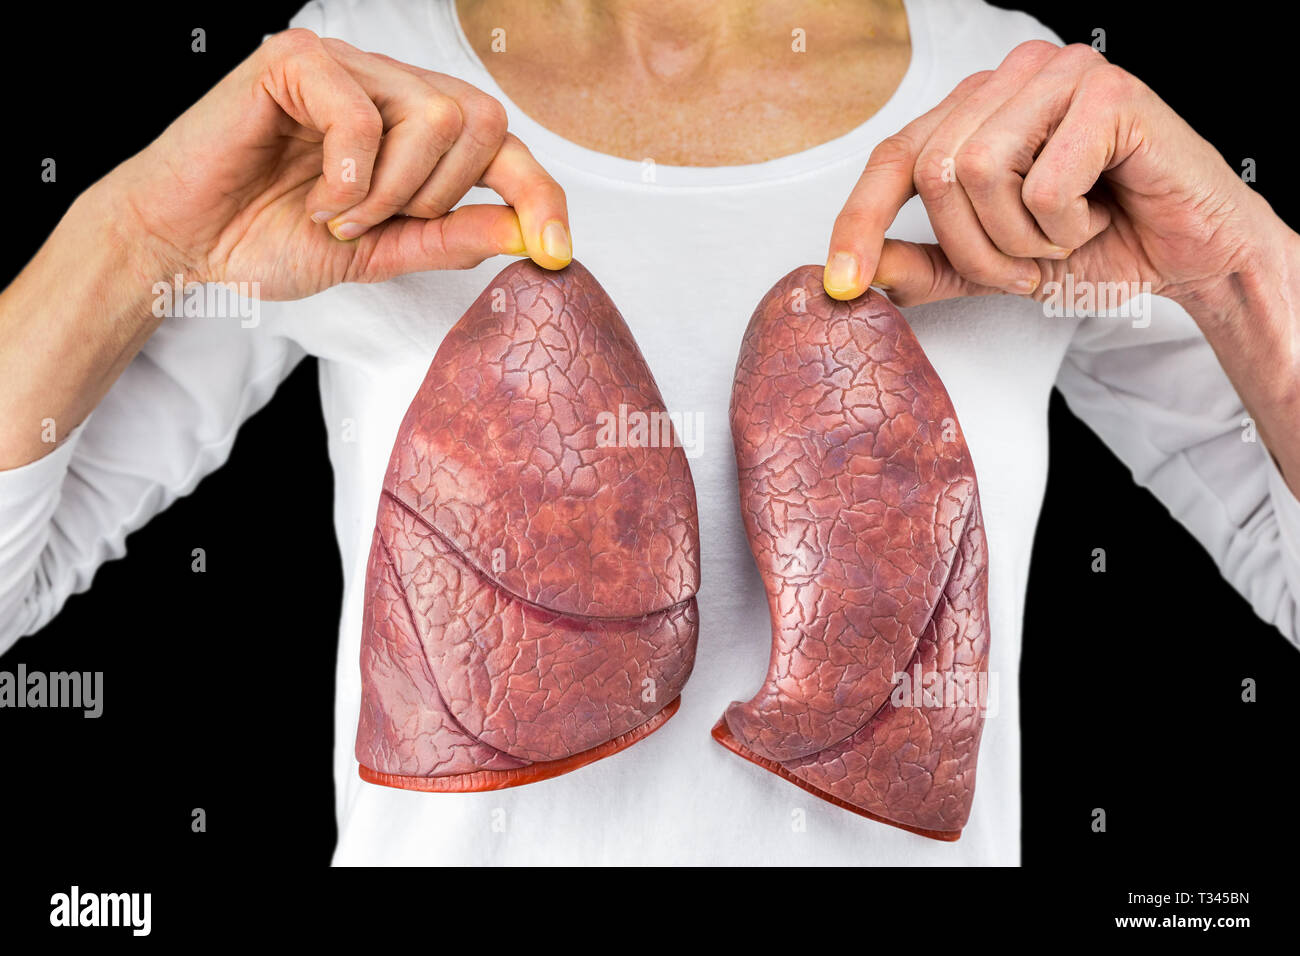 Die menschliche Person hält zwei lungenflügel Modelle vor weiße Brust auf schwarzem Hintergrund Stockfoto